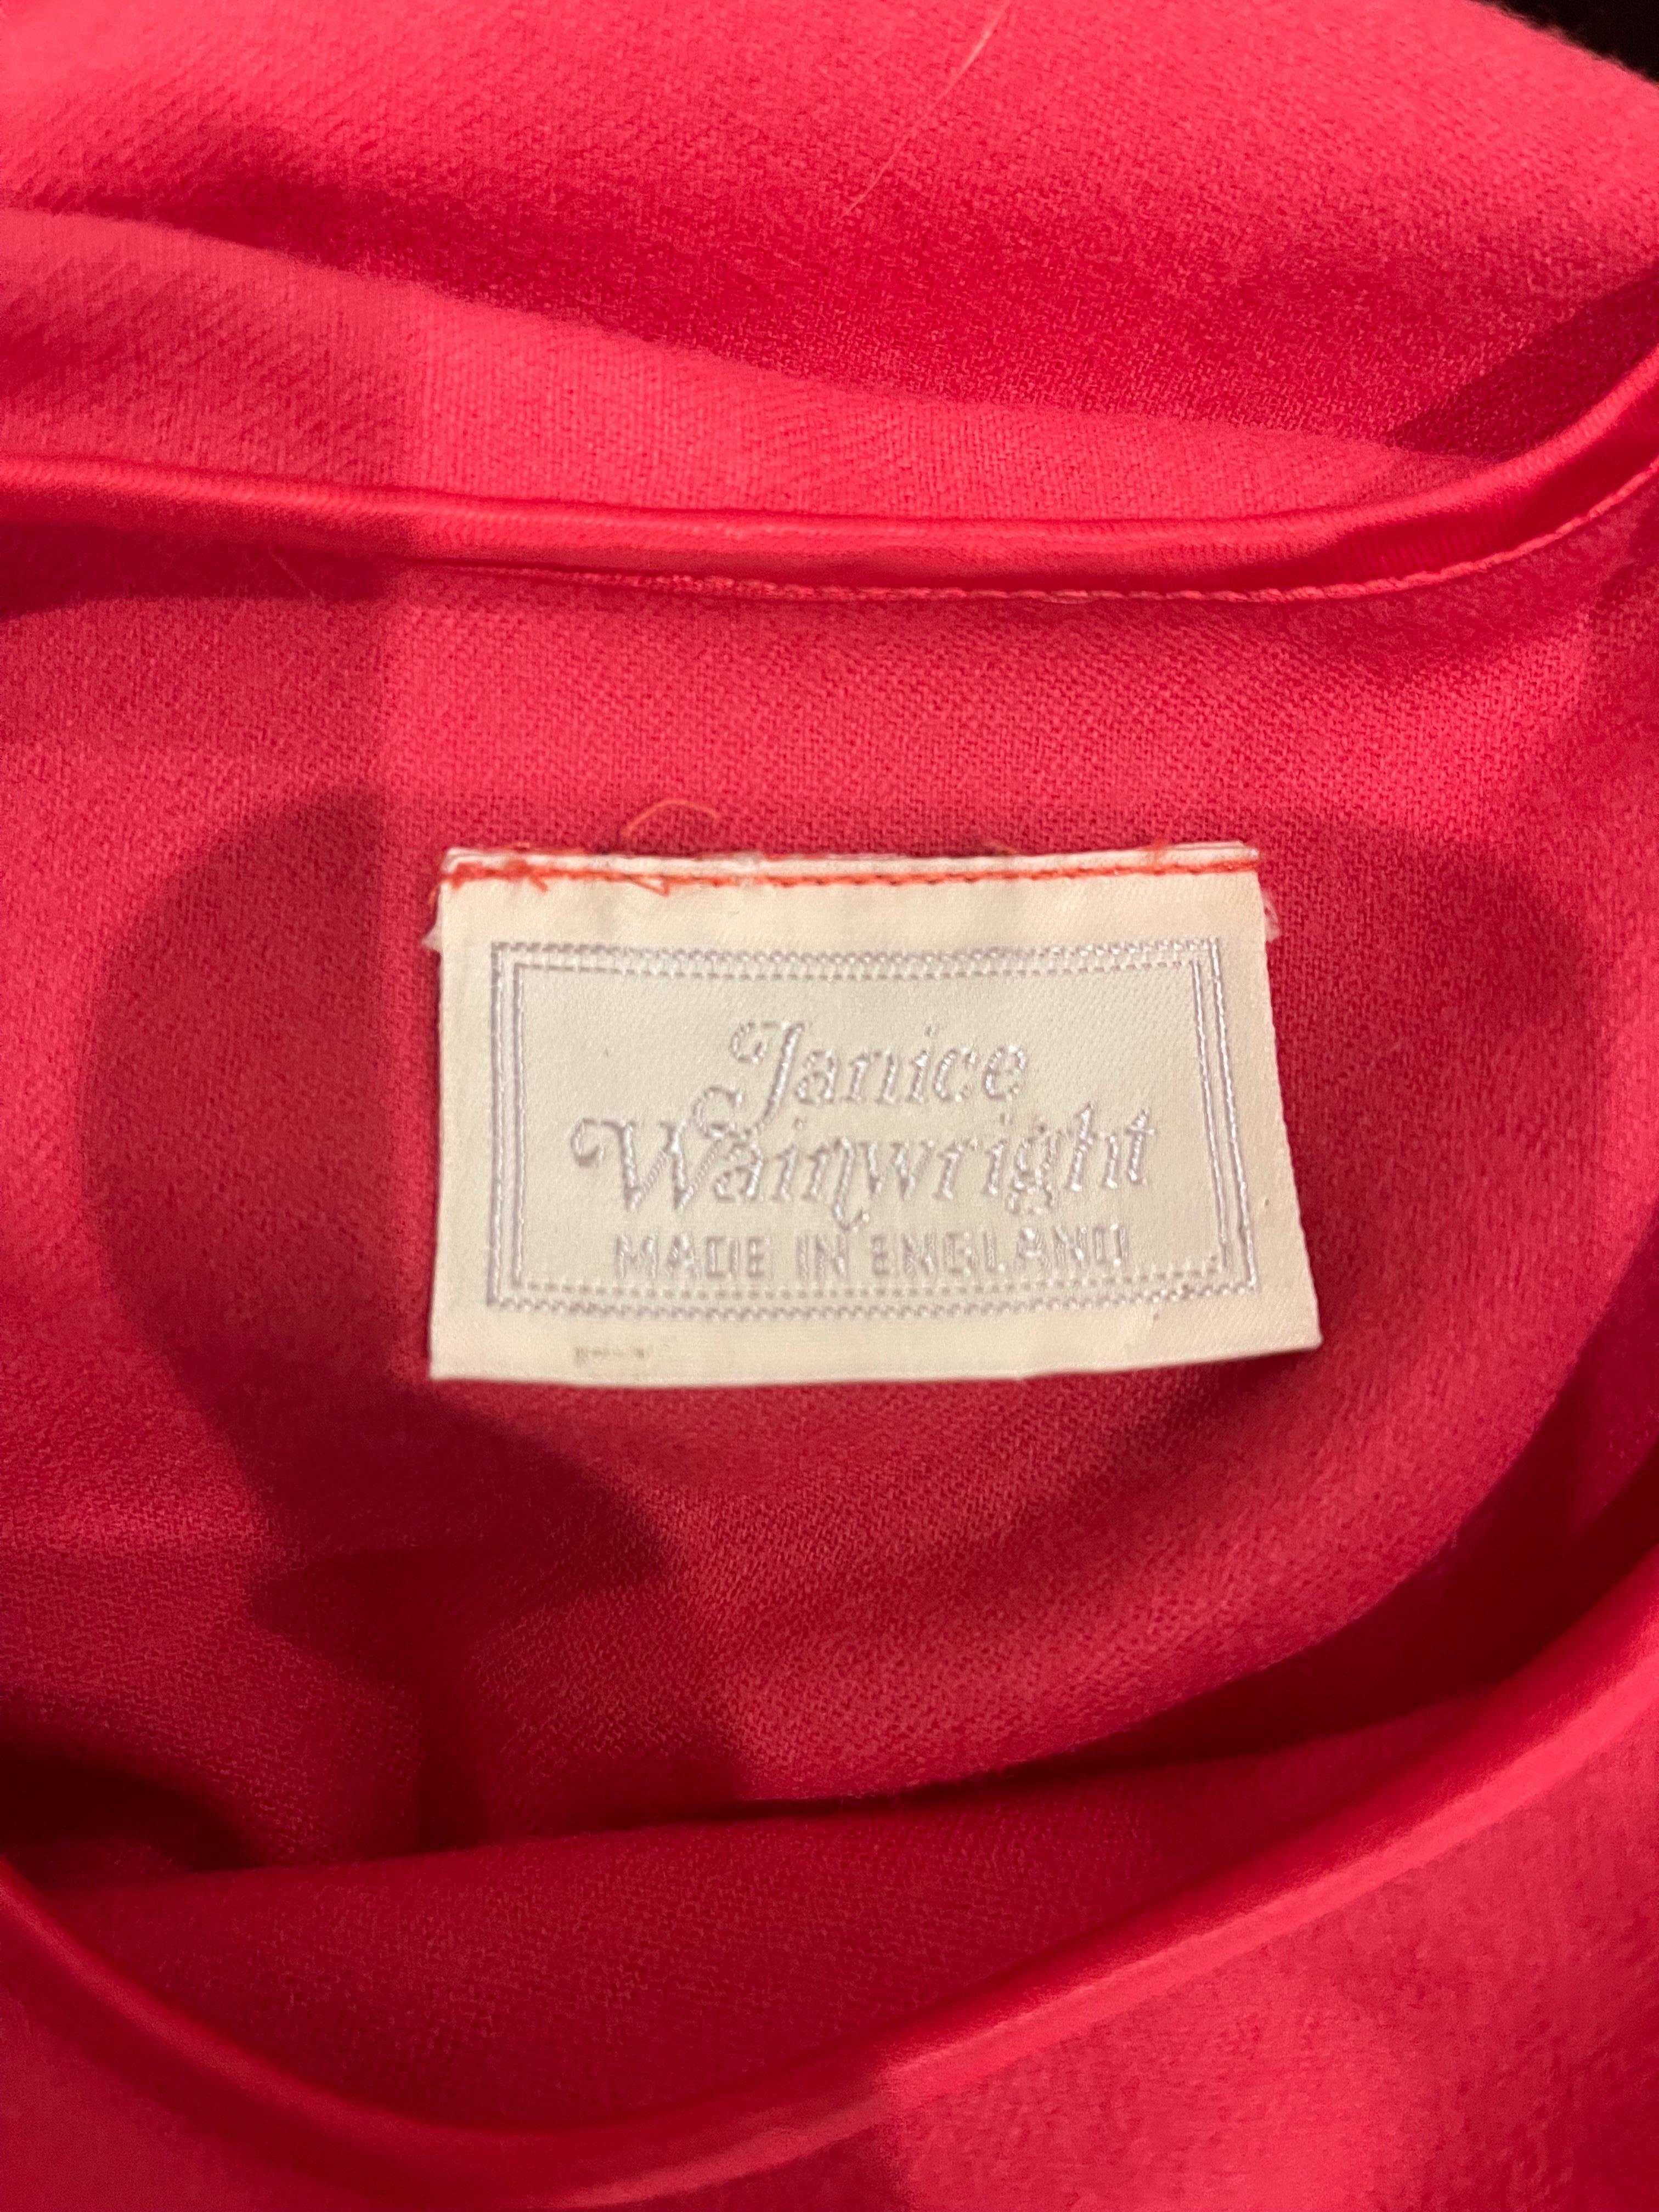 Superbe robe midi en feutre de laine JANICE WAINWRIGHT rose framboise à manches longues dolman ! Boutons recouverts de tissu à l'épaule gauche et fermeture éclair cachée sur le côté. Poches de chaque côté de la taille et ceinture détachable